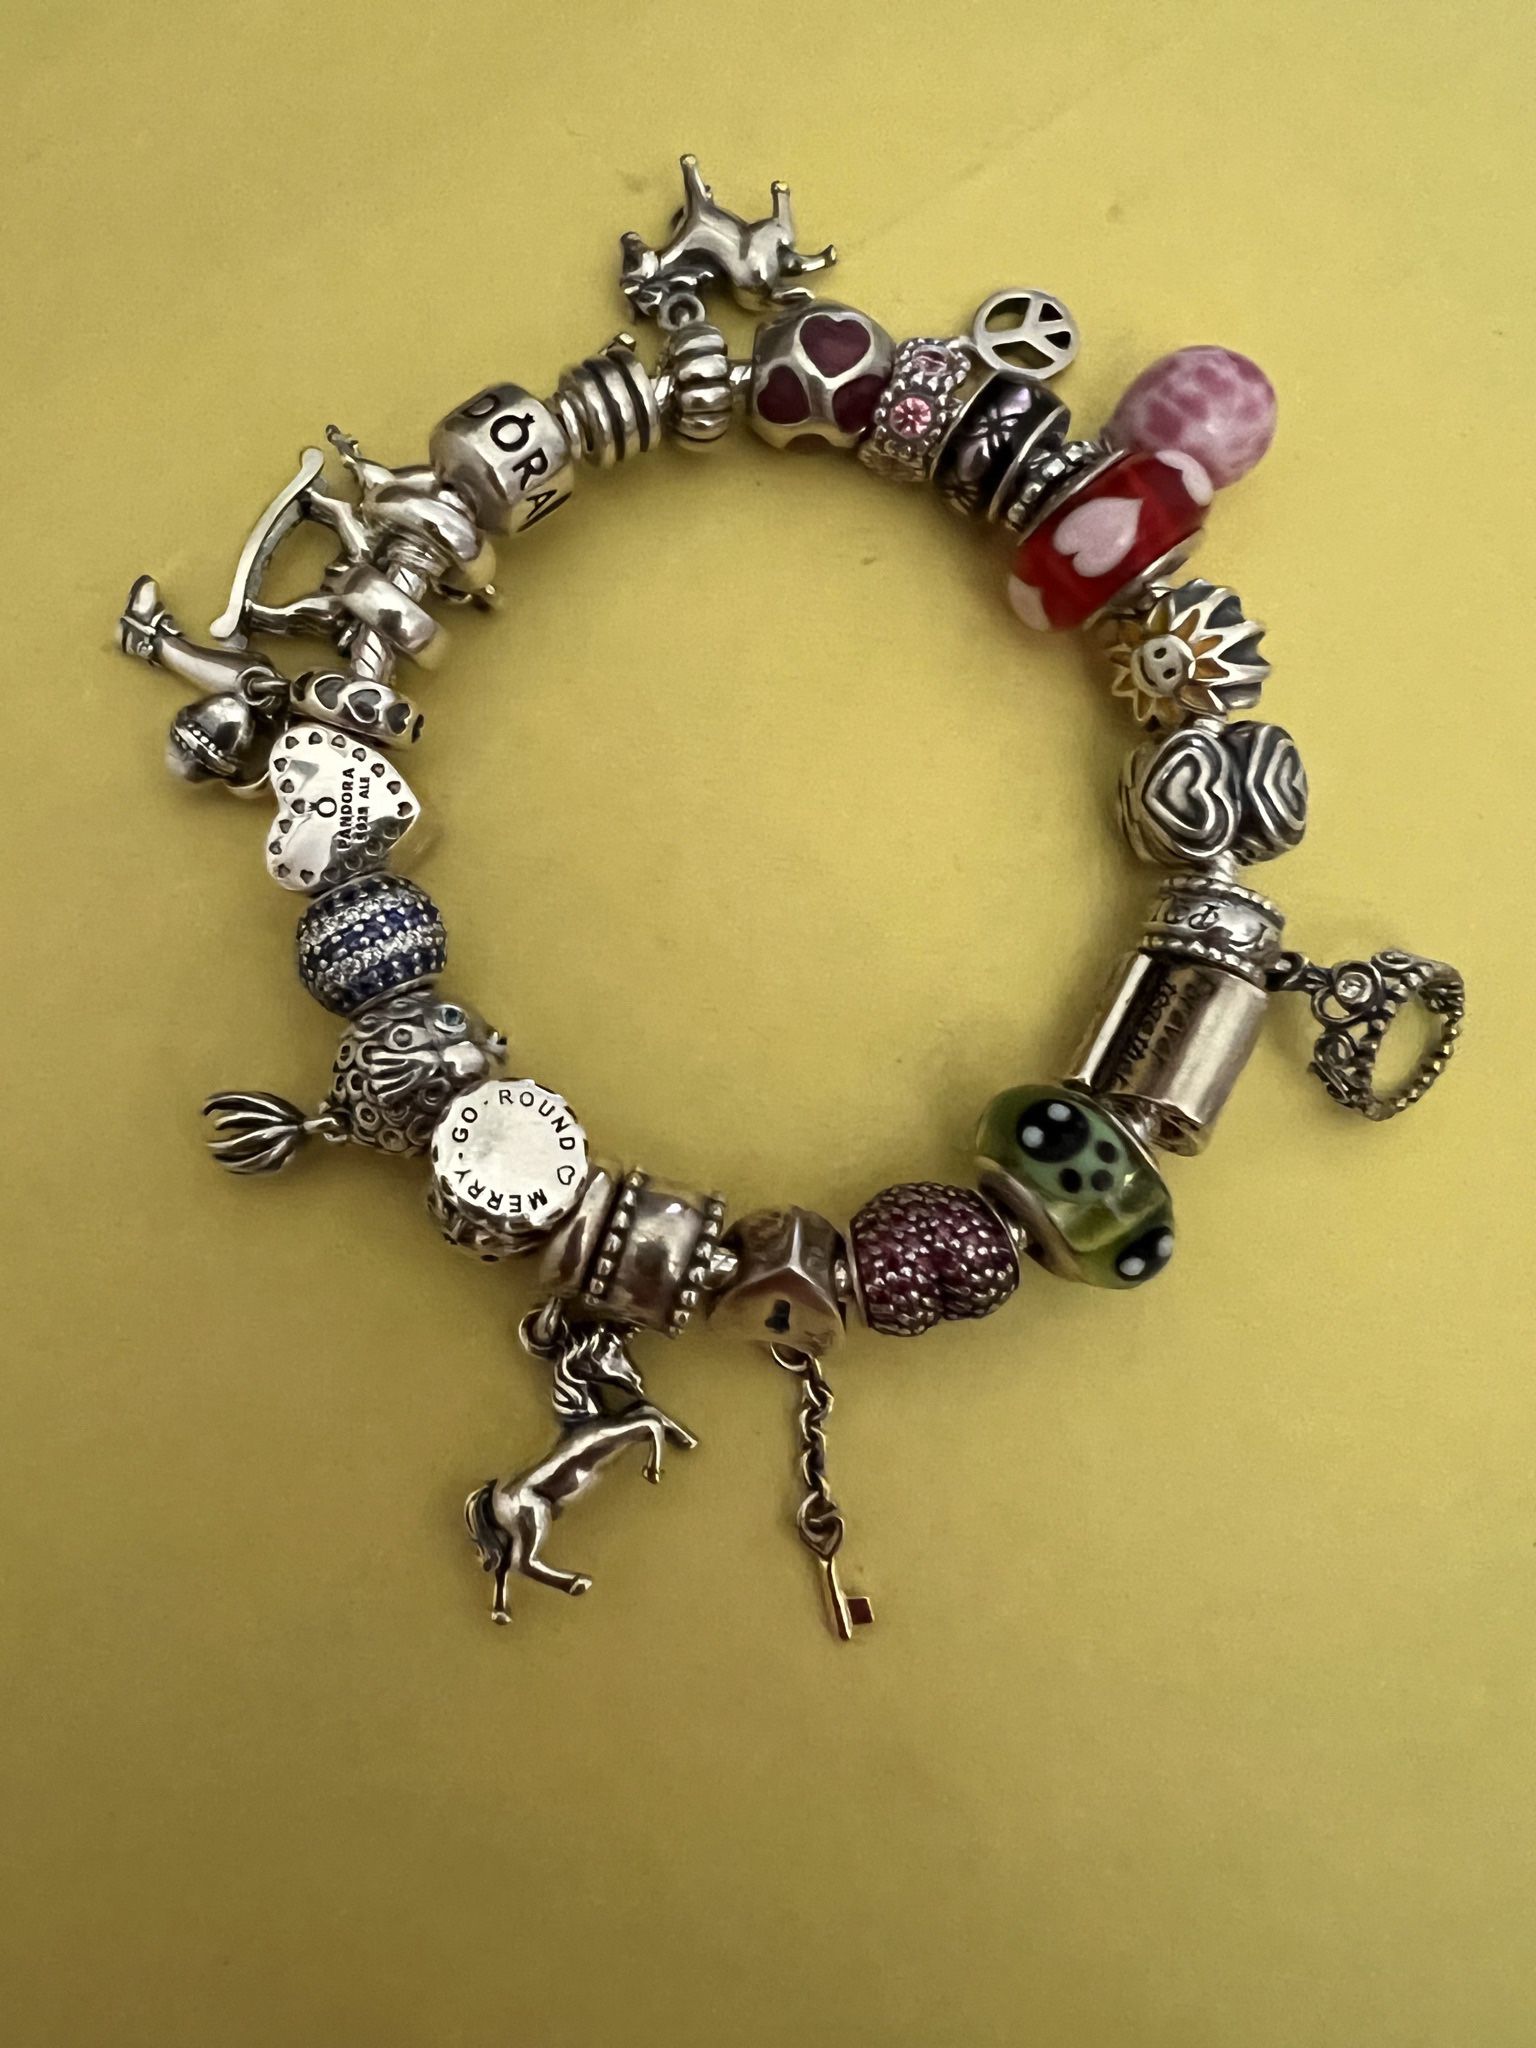 Horse Charms Original  Pandora bracelet .